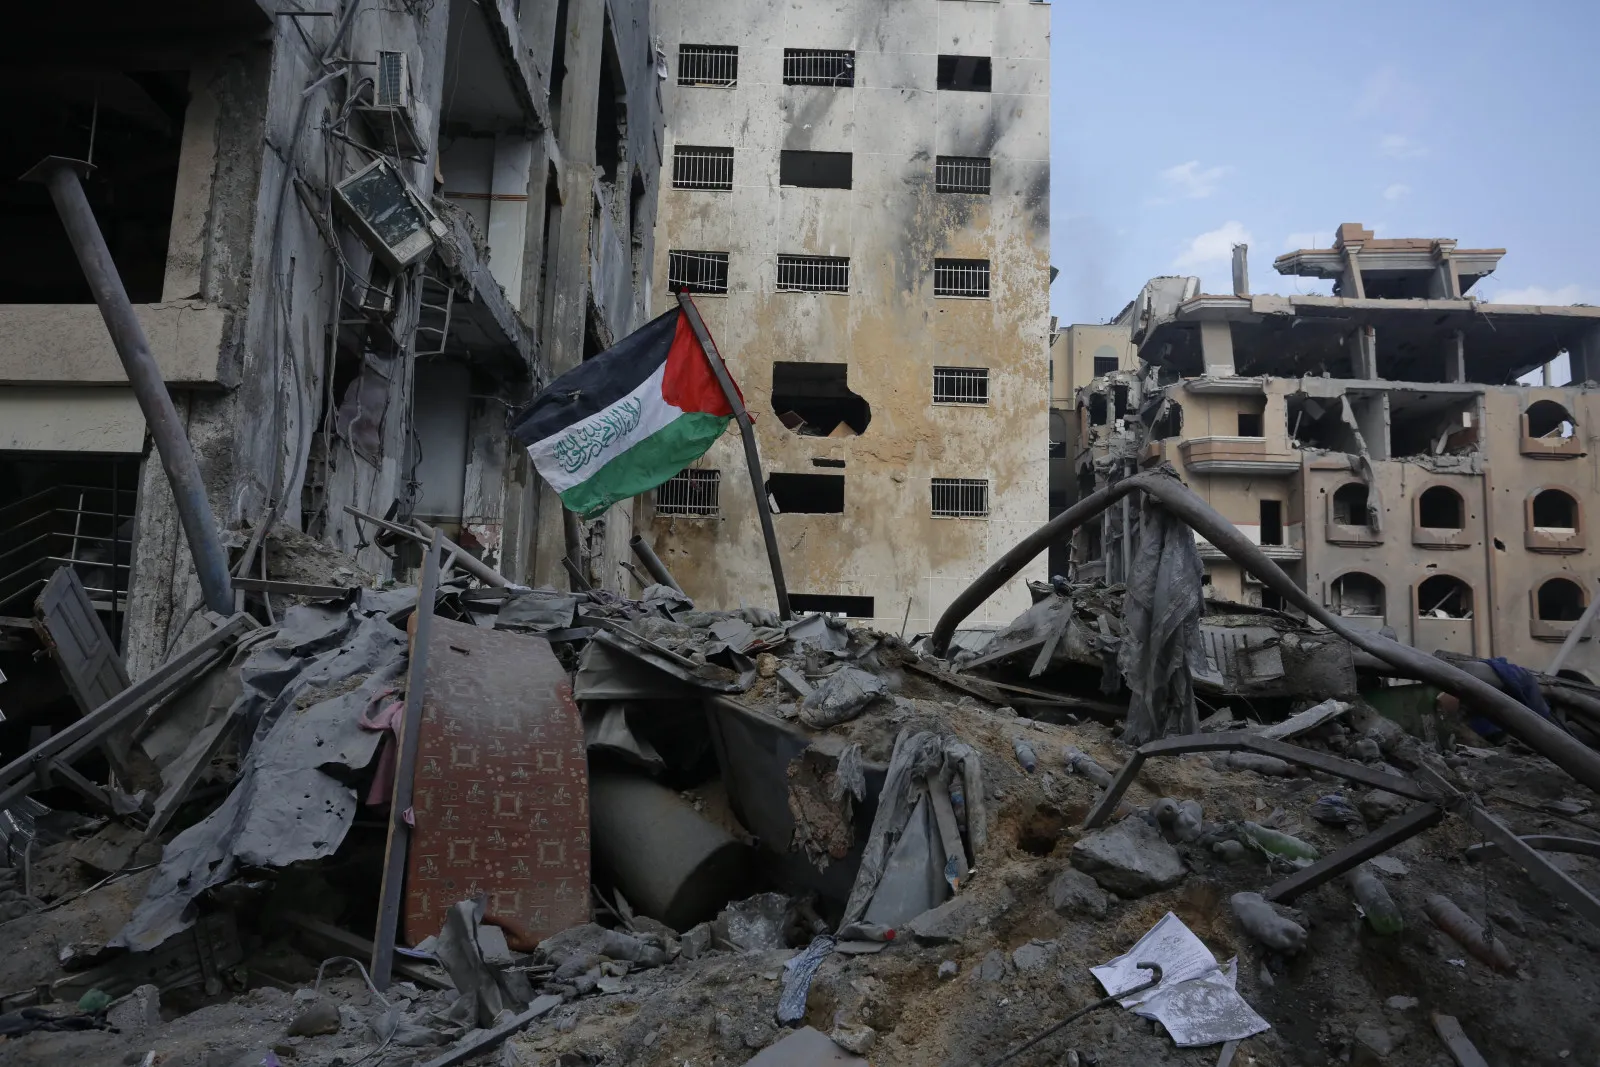 İsrail: Rehinelerin çıkarılması için Gazze'de yeni bir insani araya hazırız